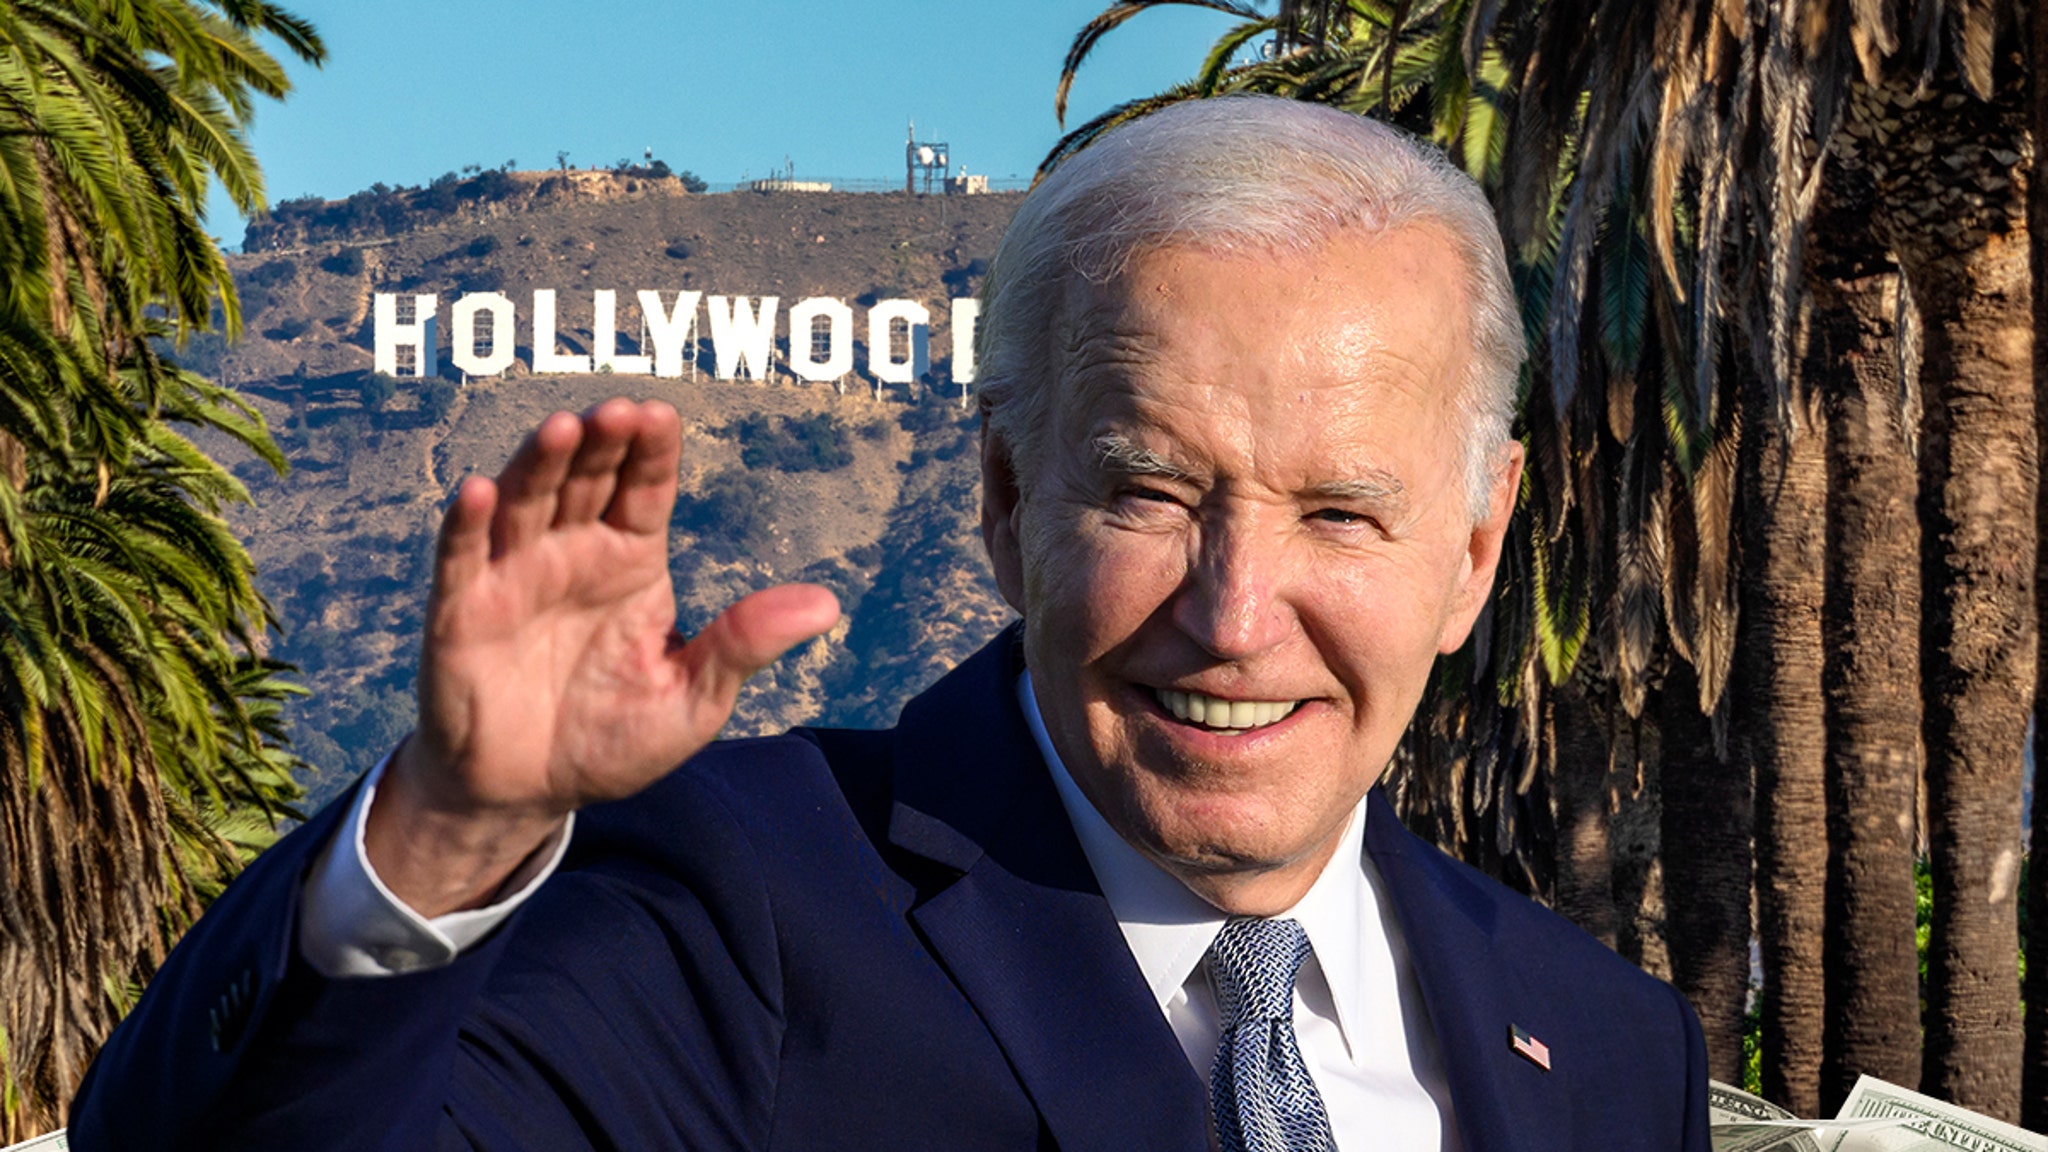 Biden campaign has already raised $28 million for a Hollywood fundraiser